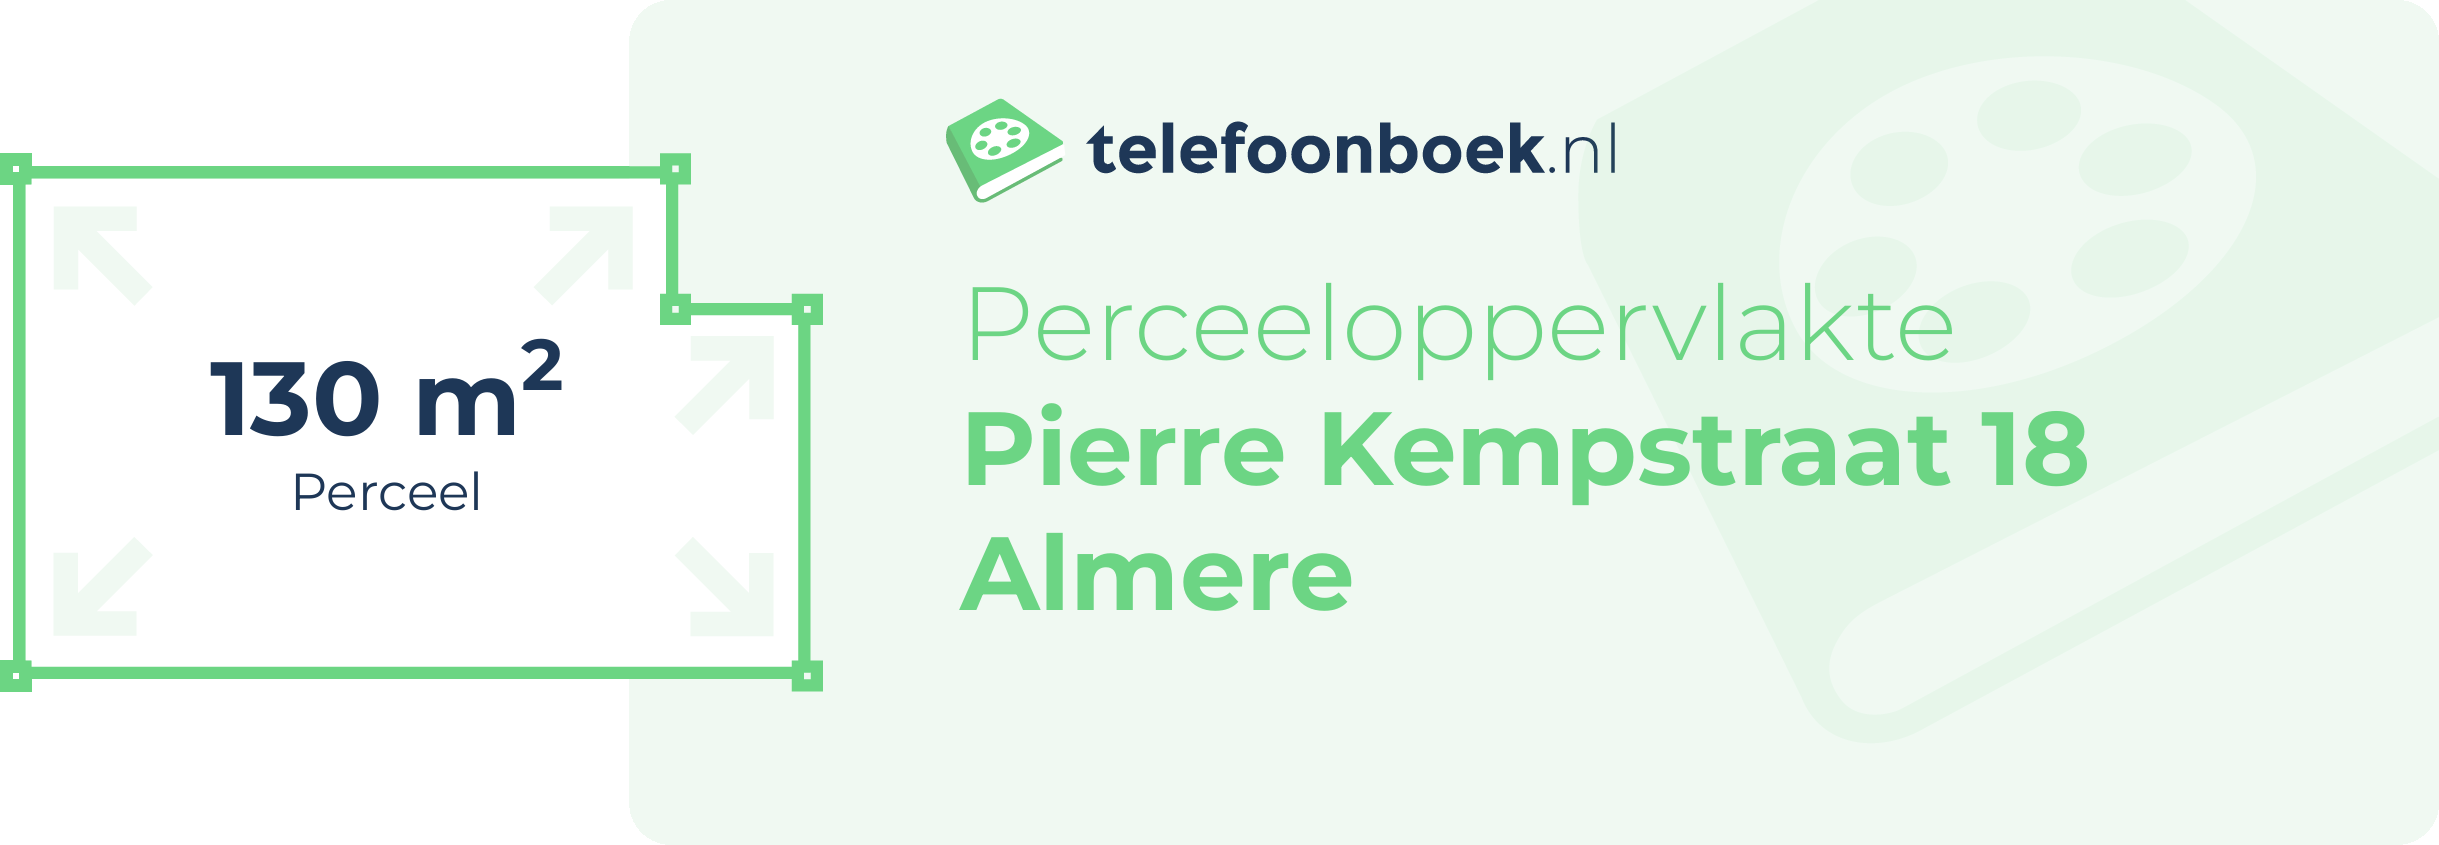 Perceeloppervlakte Pierre Kempstraat 18 Almere